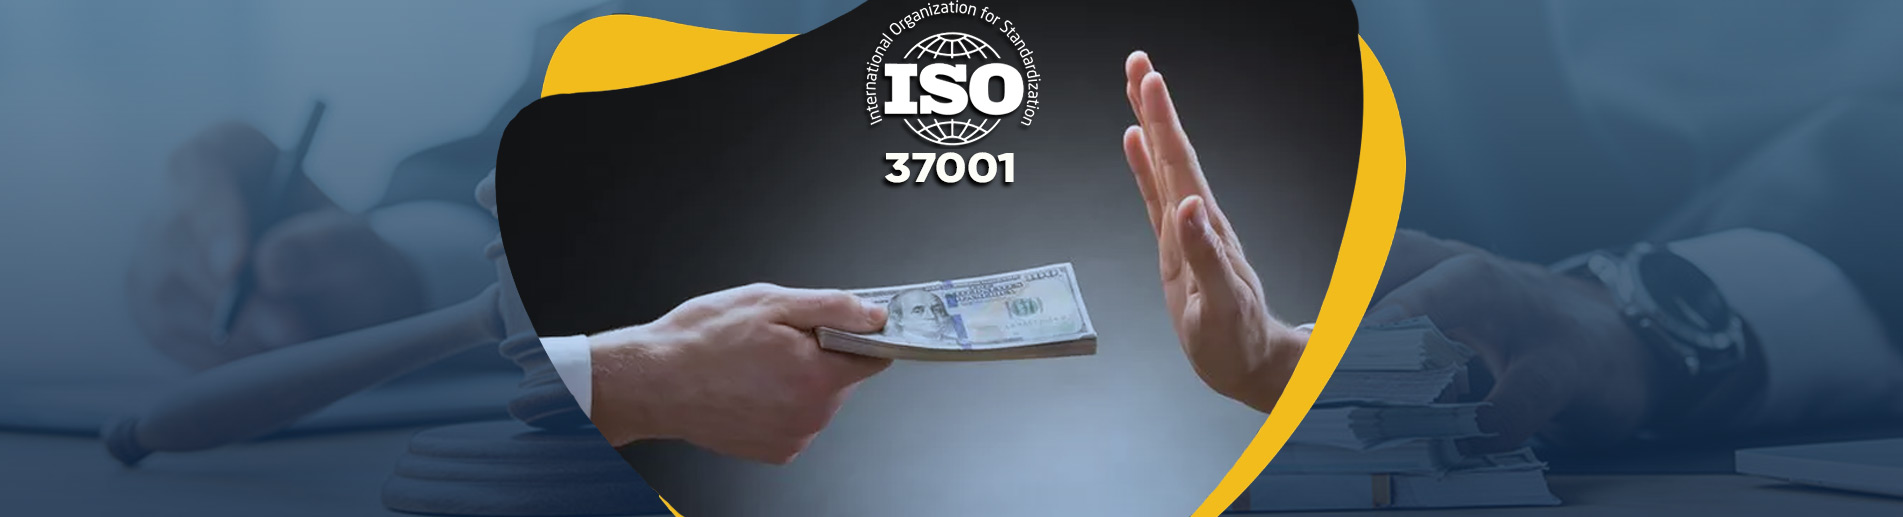 ISO 37001 Yolsuzlukla Mücadele Yönetim Sistemi